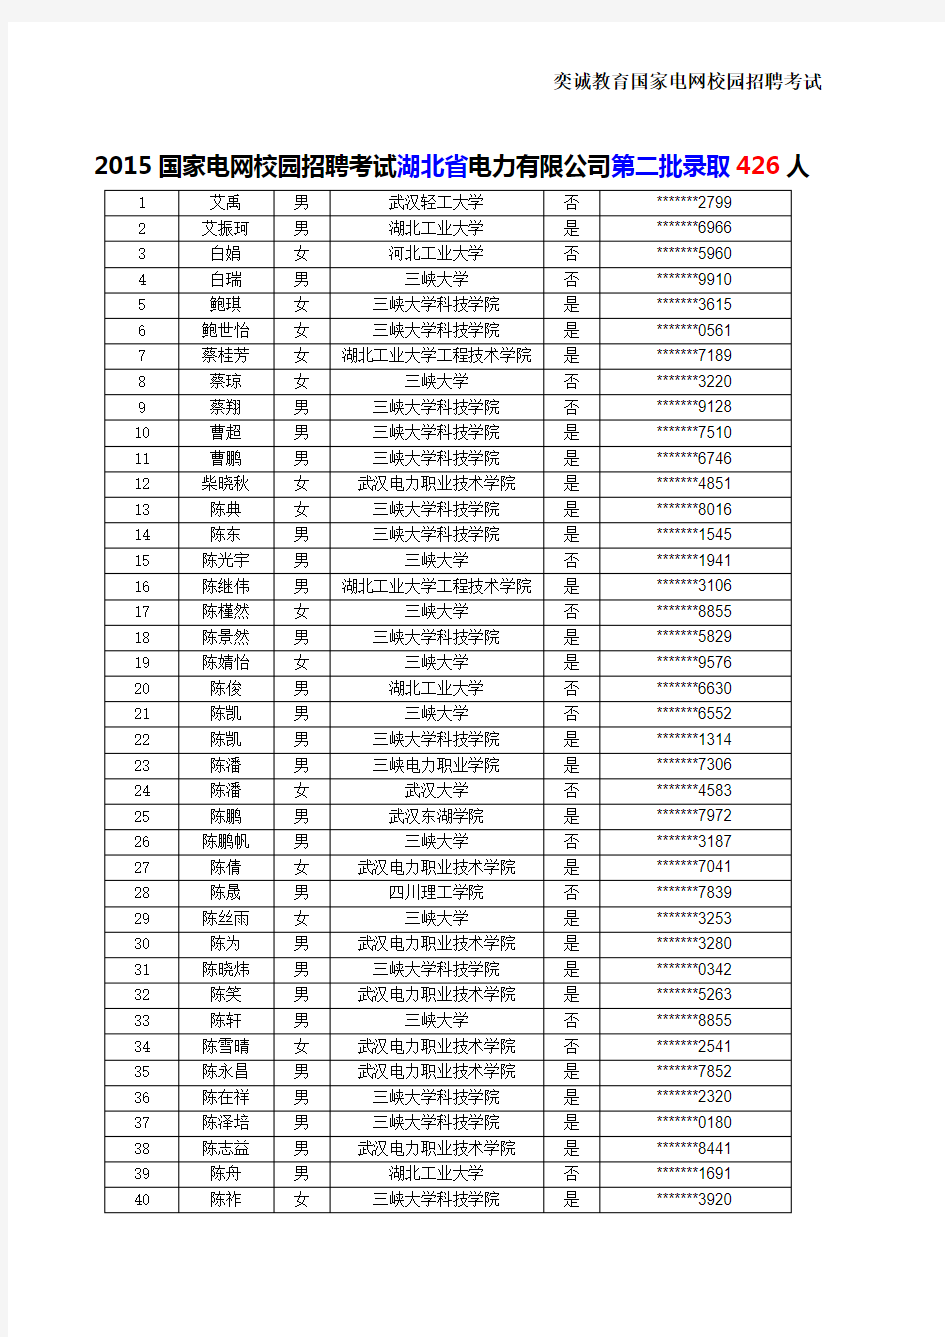 2015国家电网校园招聘考试湖北省第二批录取人数名单